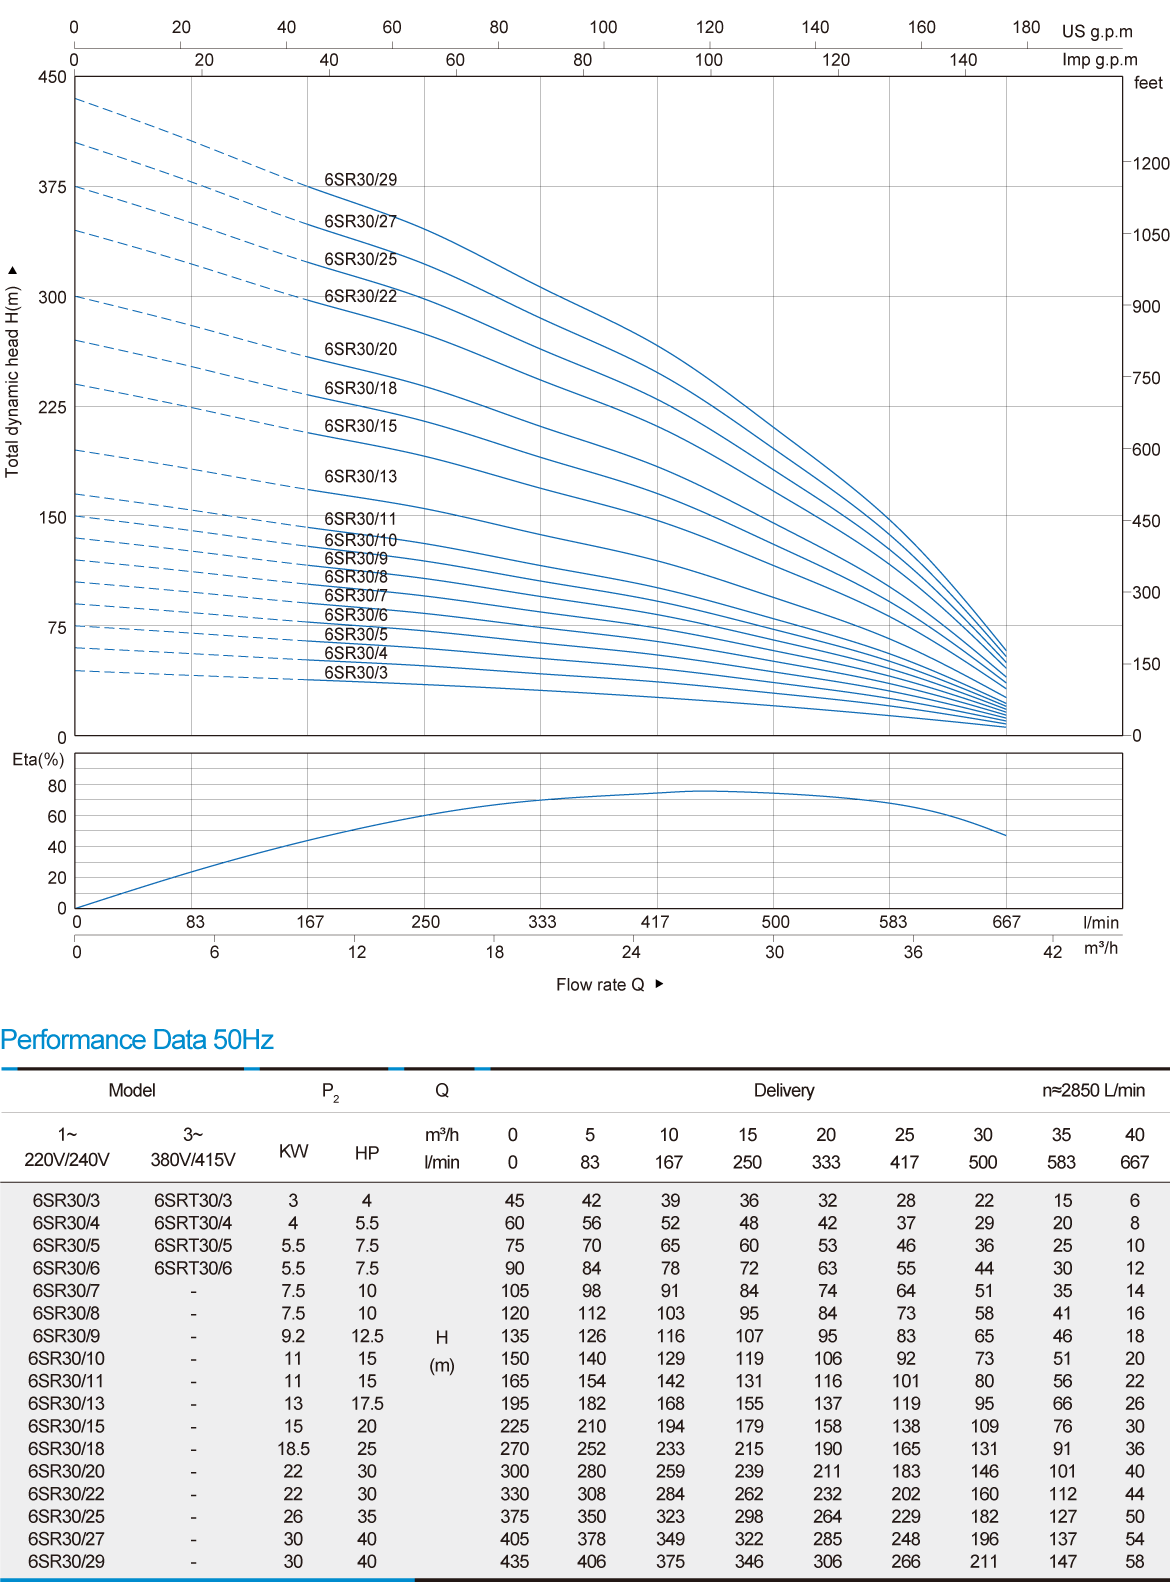 نمودار میزان عملکرد یک پمپ شناور 6SR30